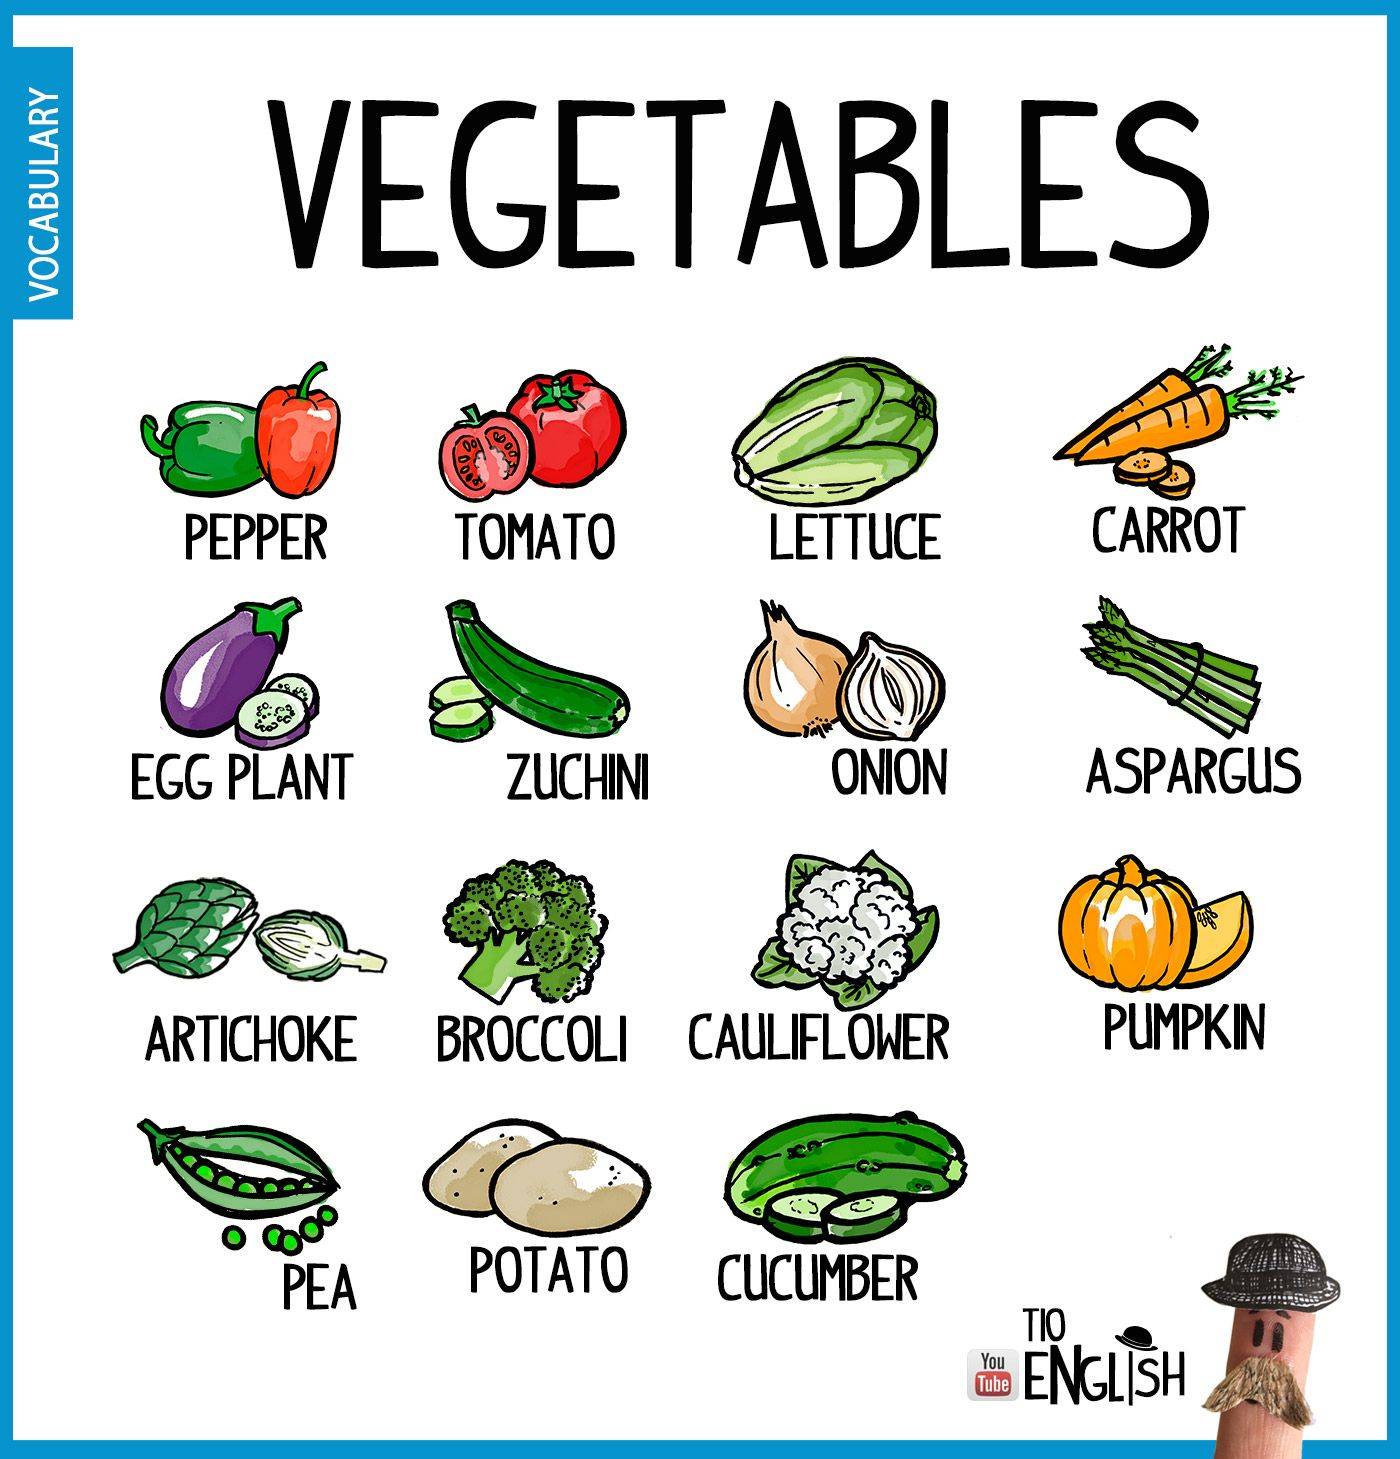 Vegetables vocabulary. Vegetables для детей на английском языке. Овощи на английском языке. Овощи по английскому для детей. Овощи на английском для детей.